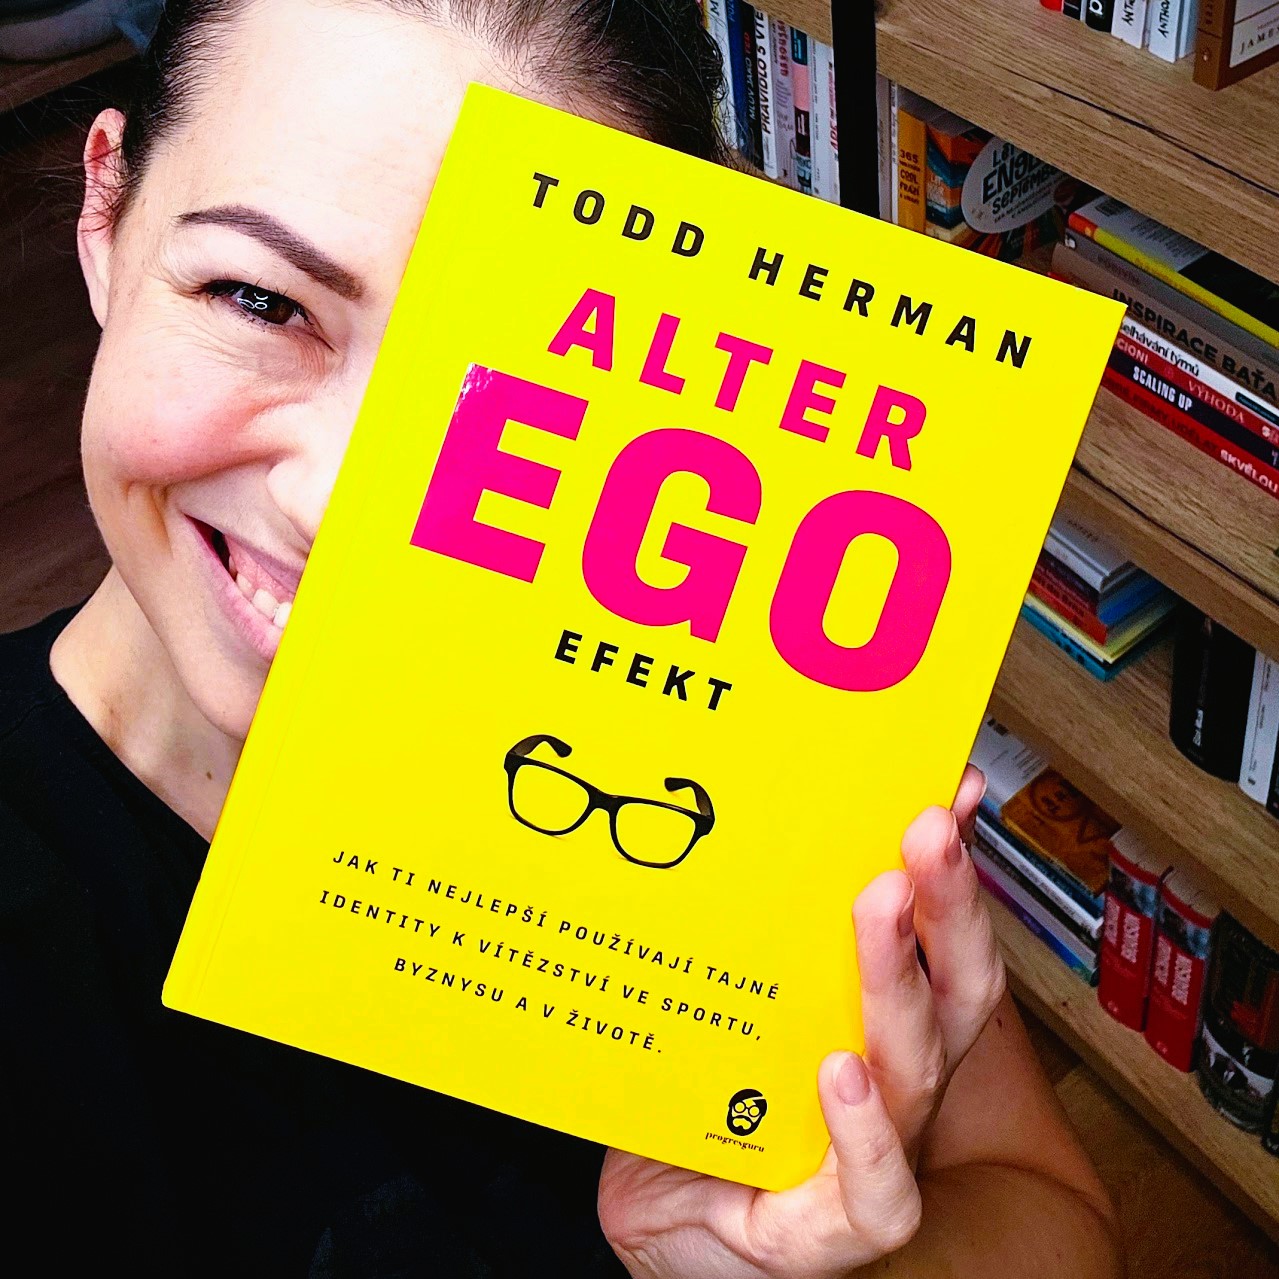 Alter ego efekt (The Alter Ego Effect) - Todd Herman